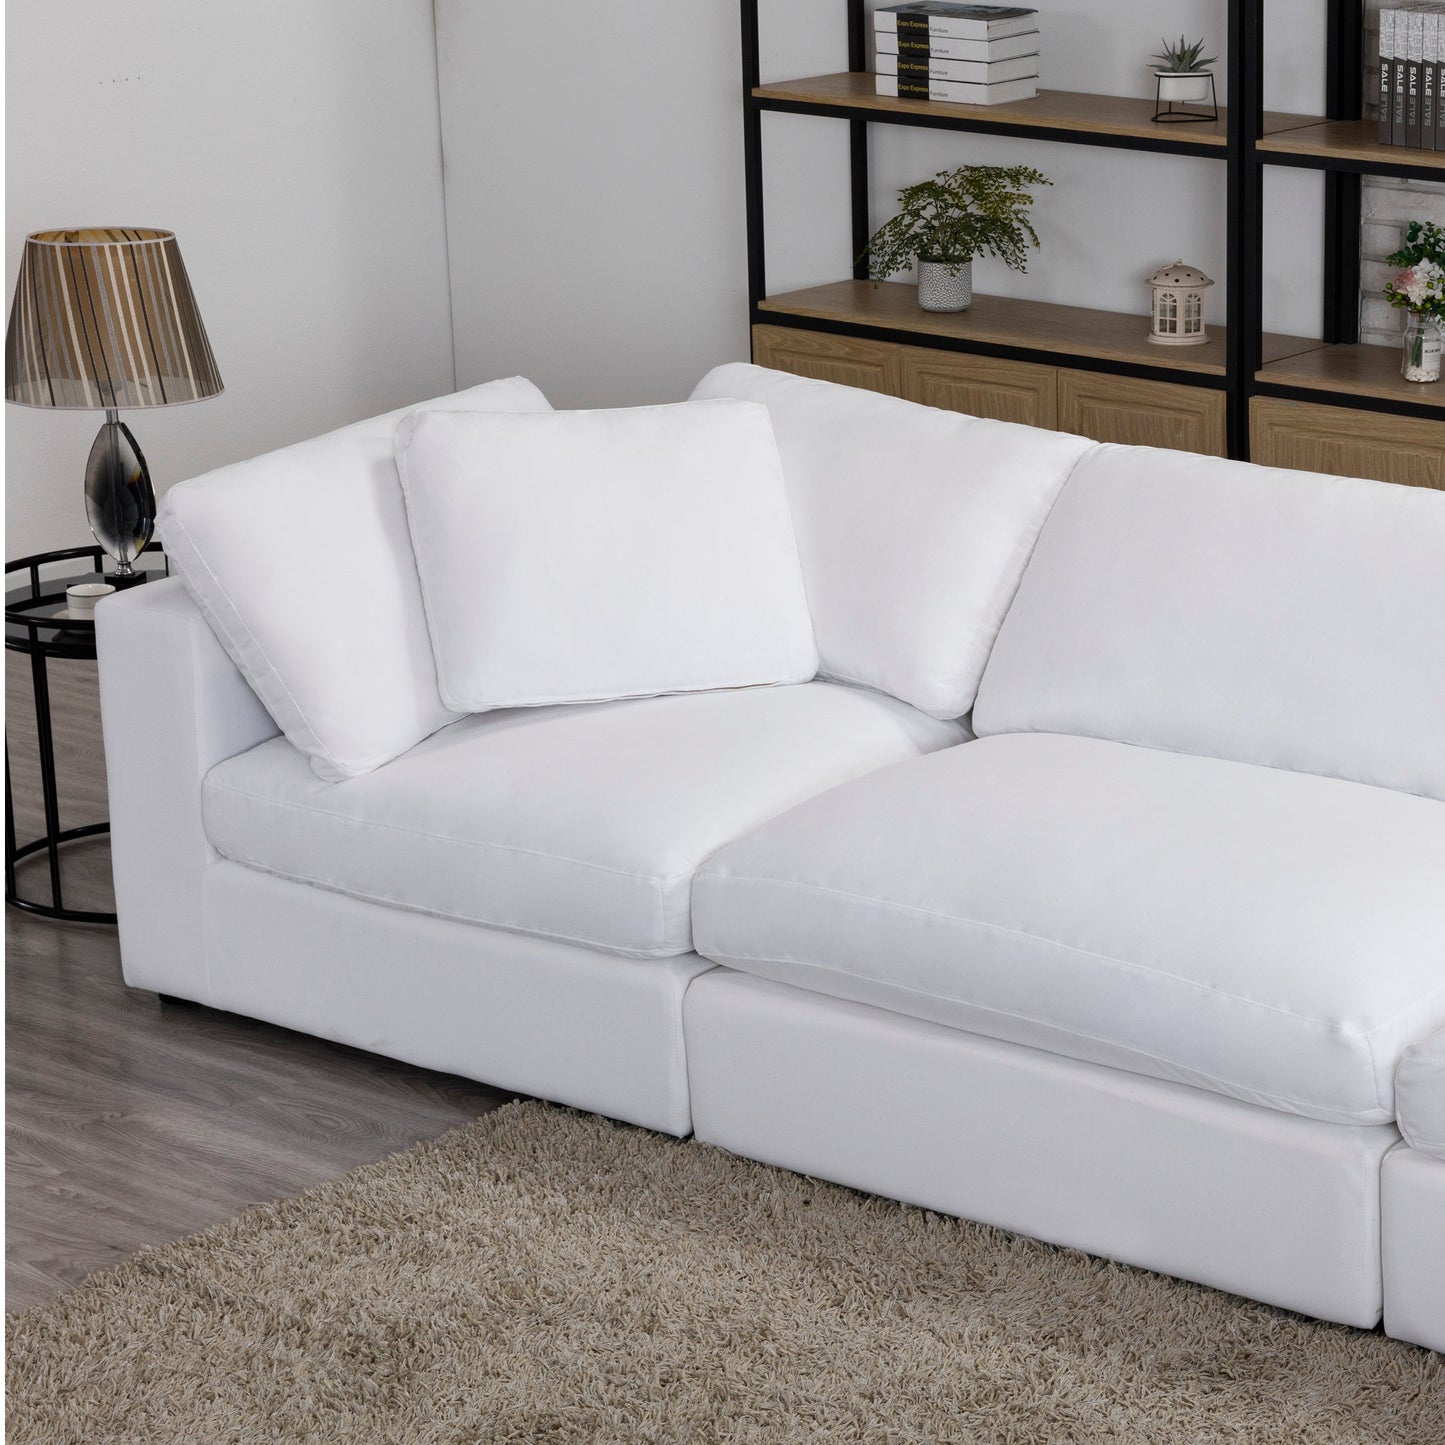 Rivas Contemporary Feather Fill 4-Piece Modular Sectional Sofa, White